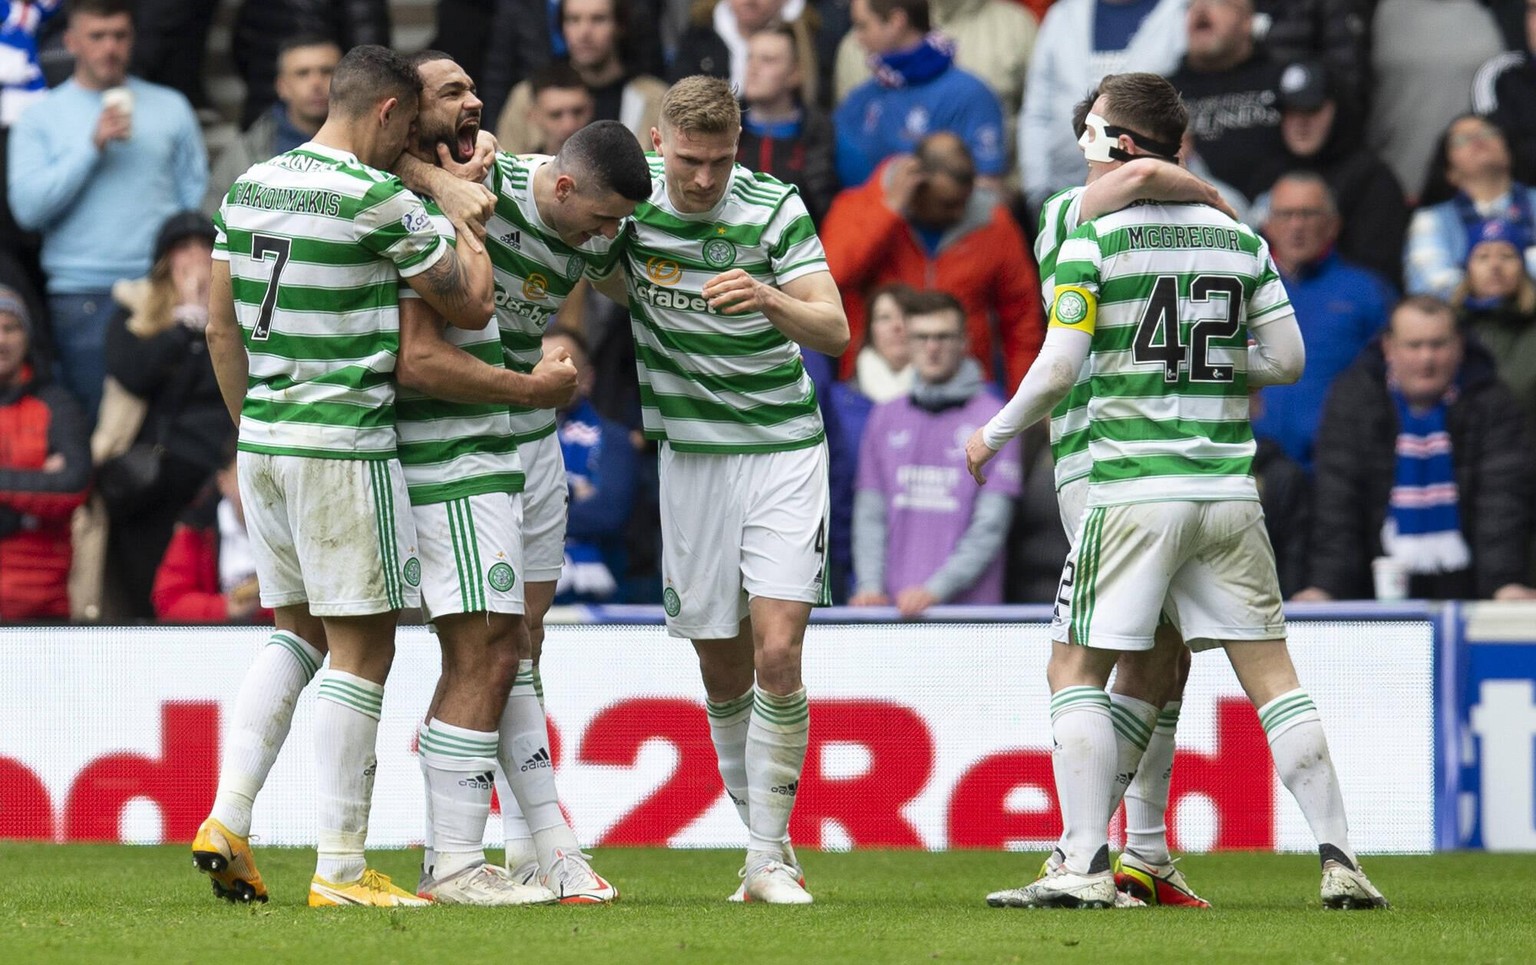 Celtic gewinnt das Derby gegen die Rangers und hat den Meistertitel damit fast auf sicher.